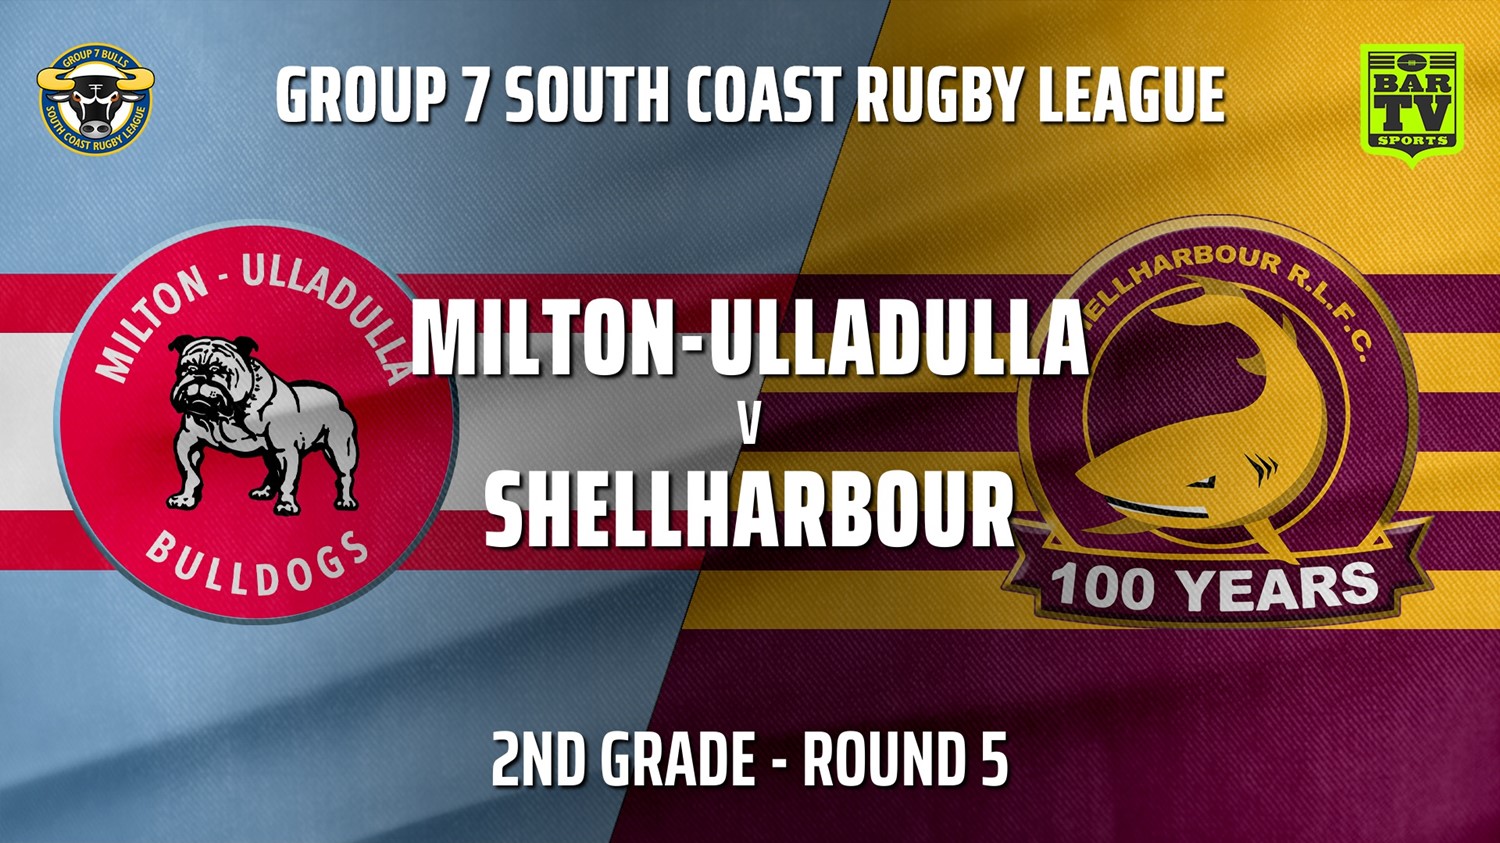 210516-Group 7 RL Round 5 - 2nd Grade - Milton-Ulladulla Bulldogs v Shellharbour Sharks Slate Image